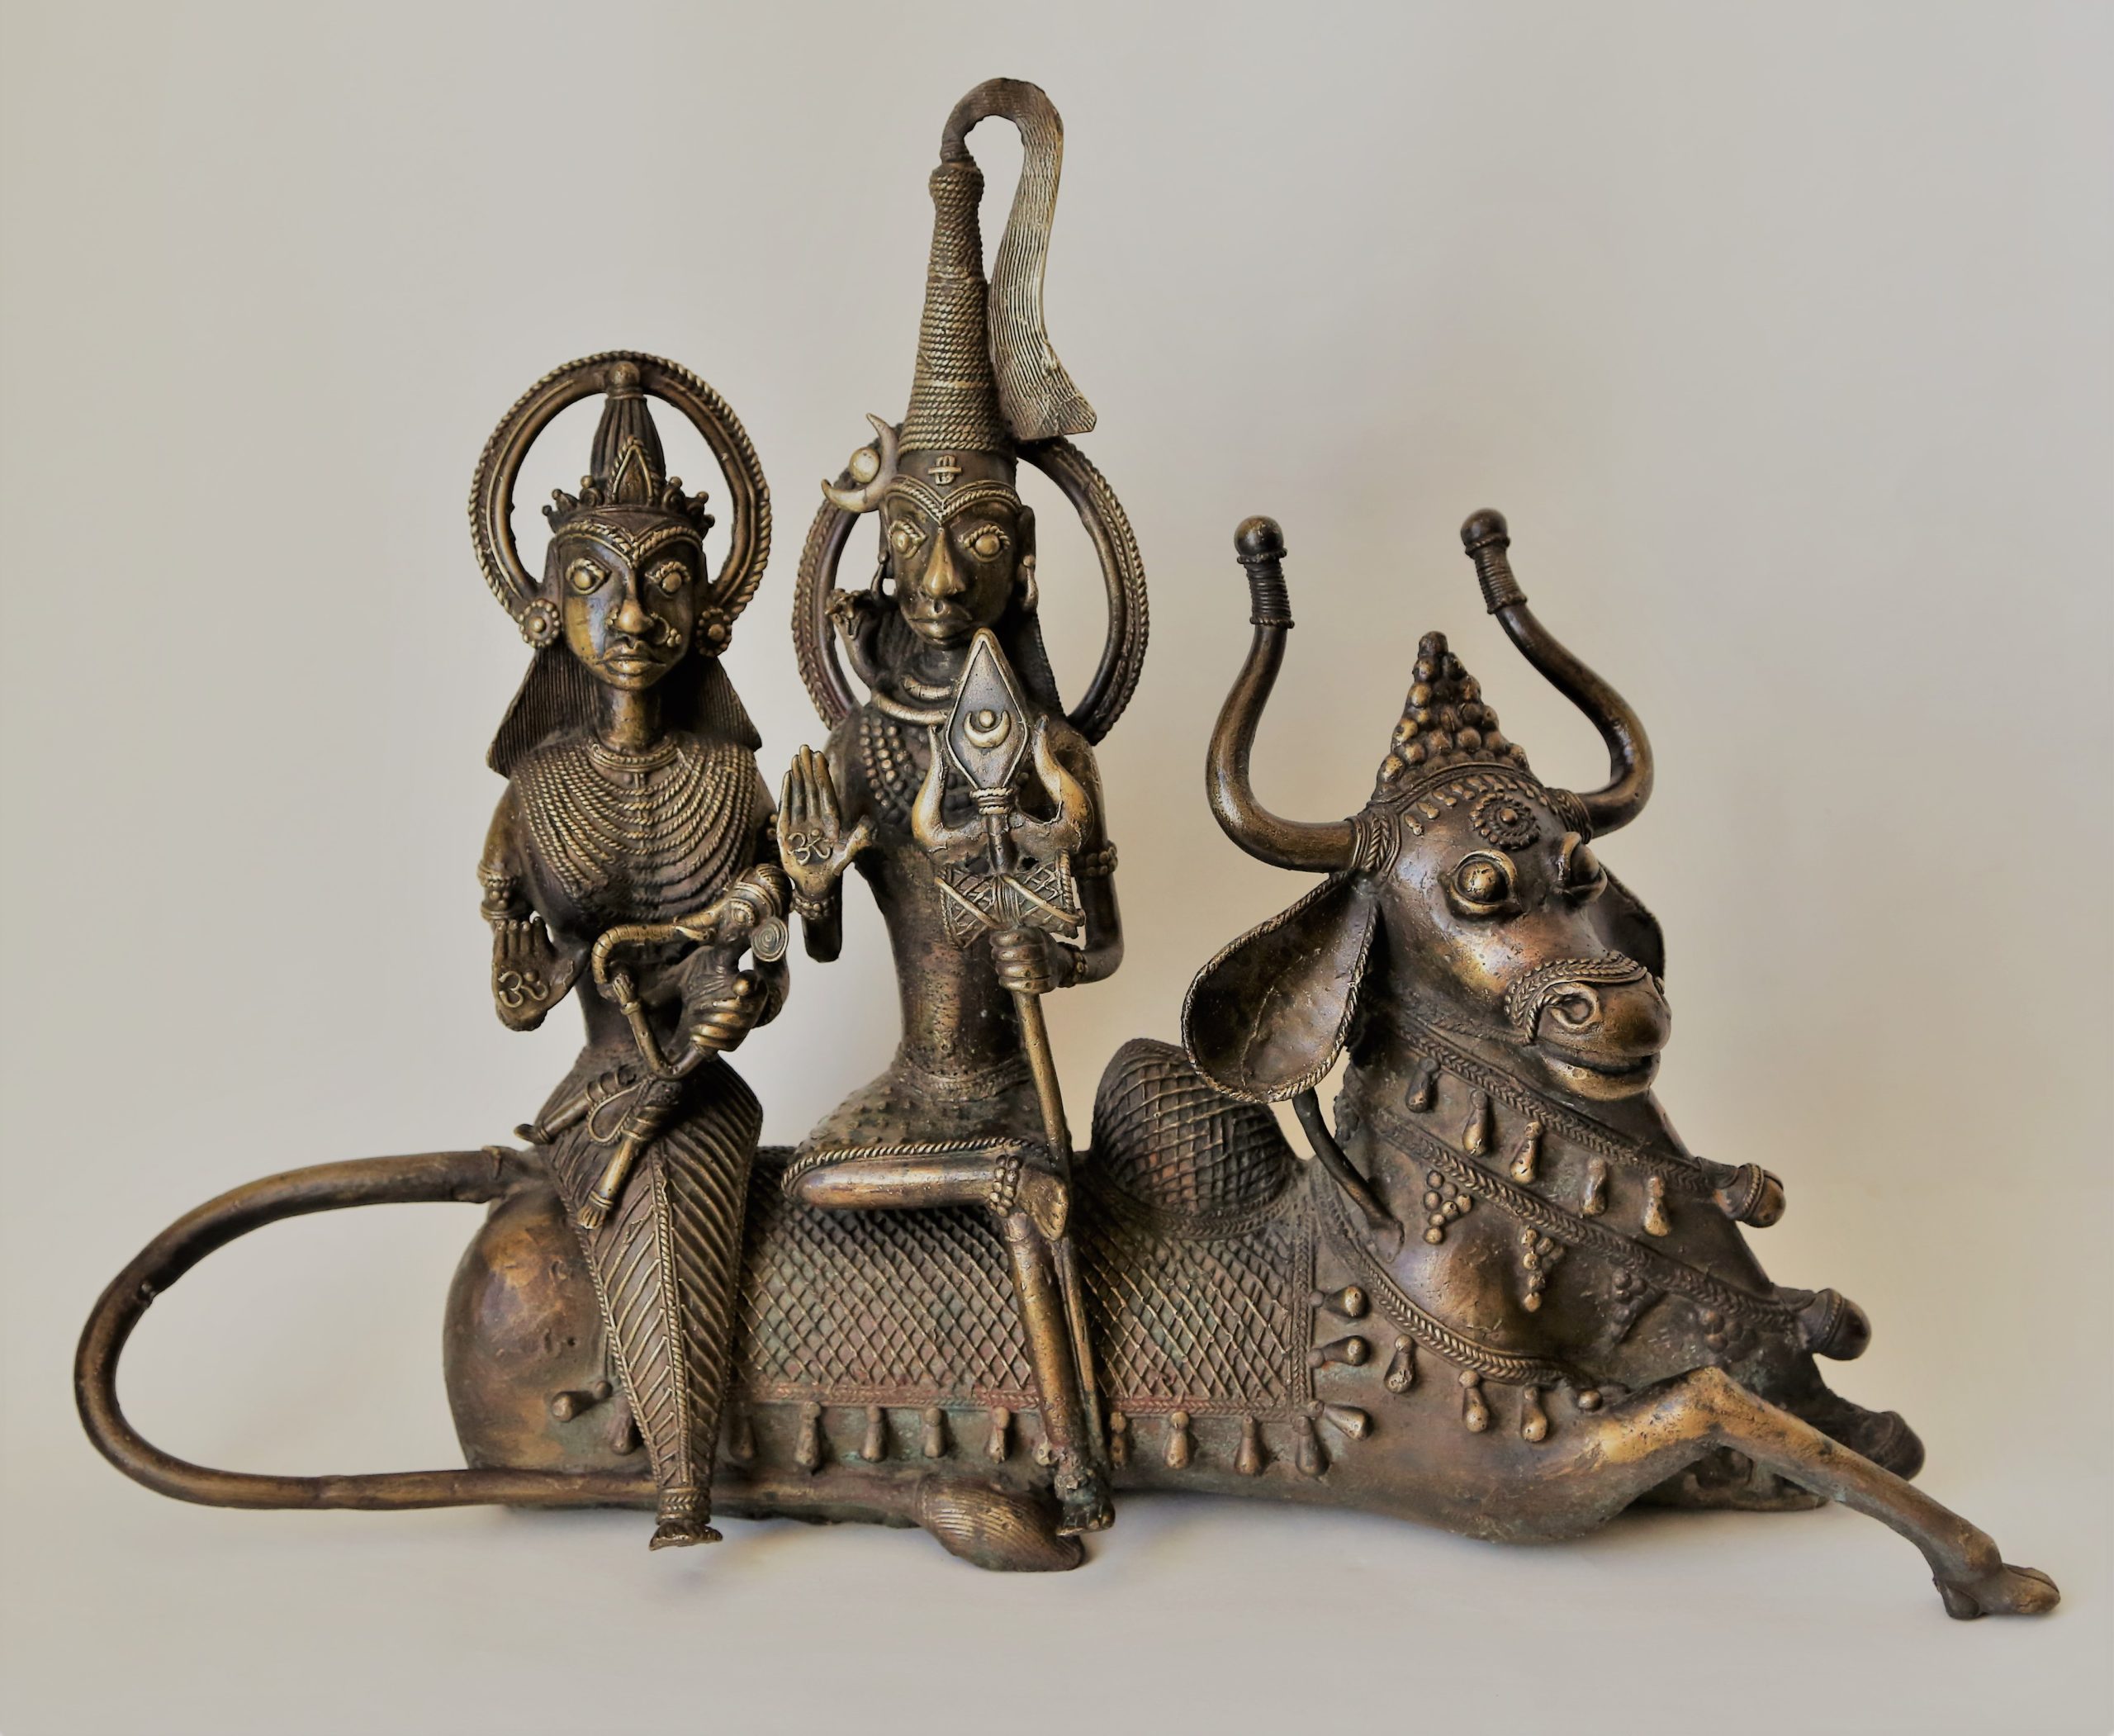 Шива и Парвати с Ганешем на руках верхом на быке Нанди